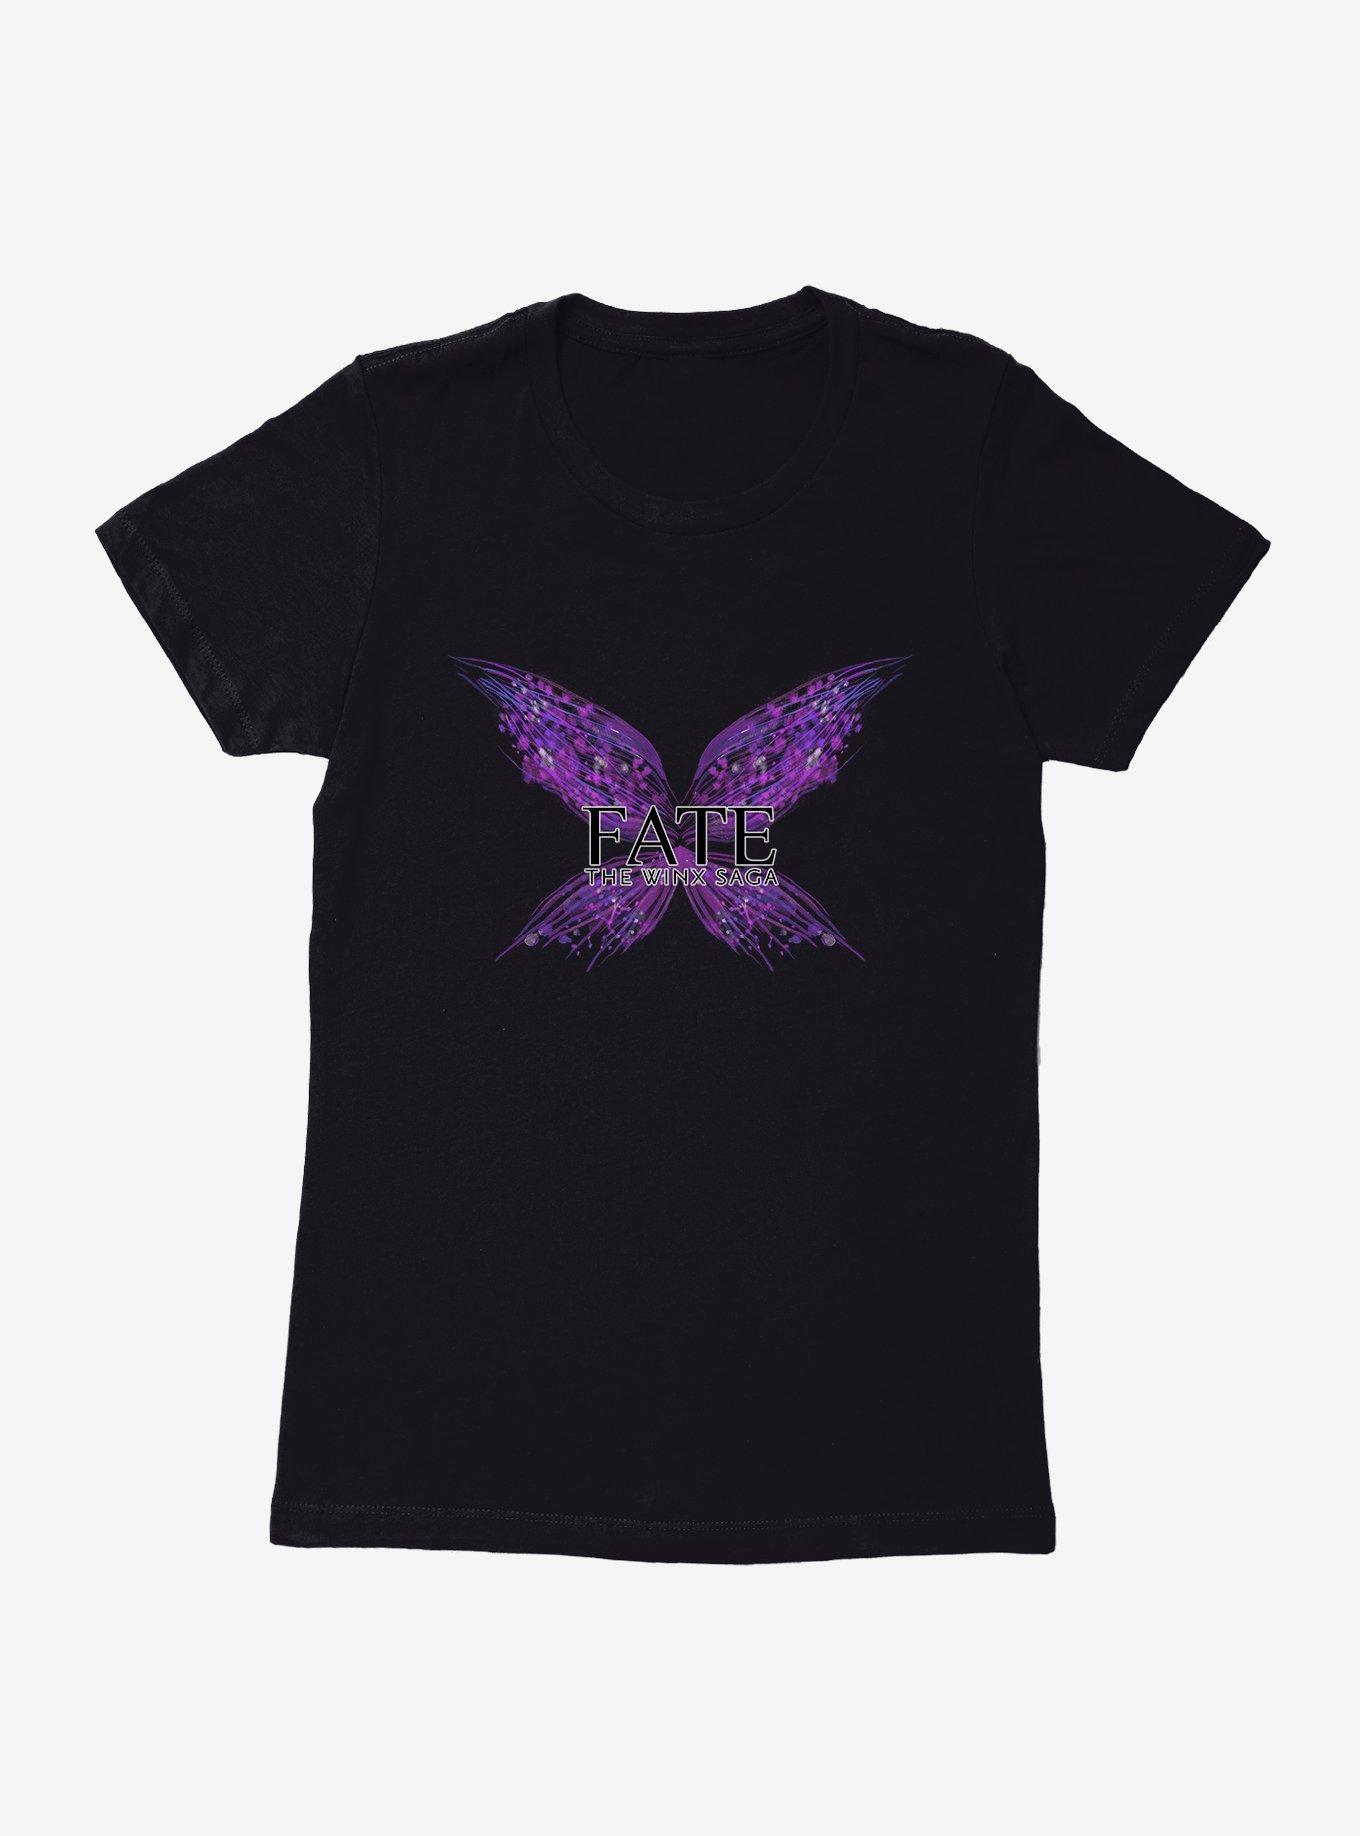 Fate: The Winx Saga Musa Logo Womens T-Shirt | BoxLunch